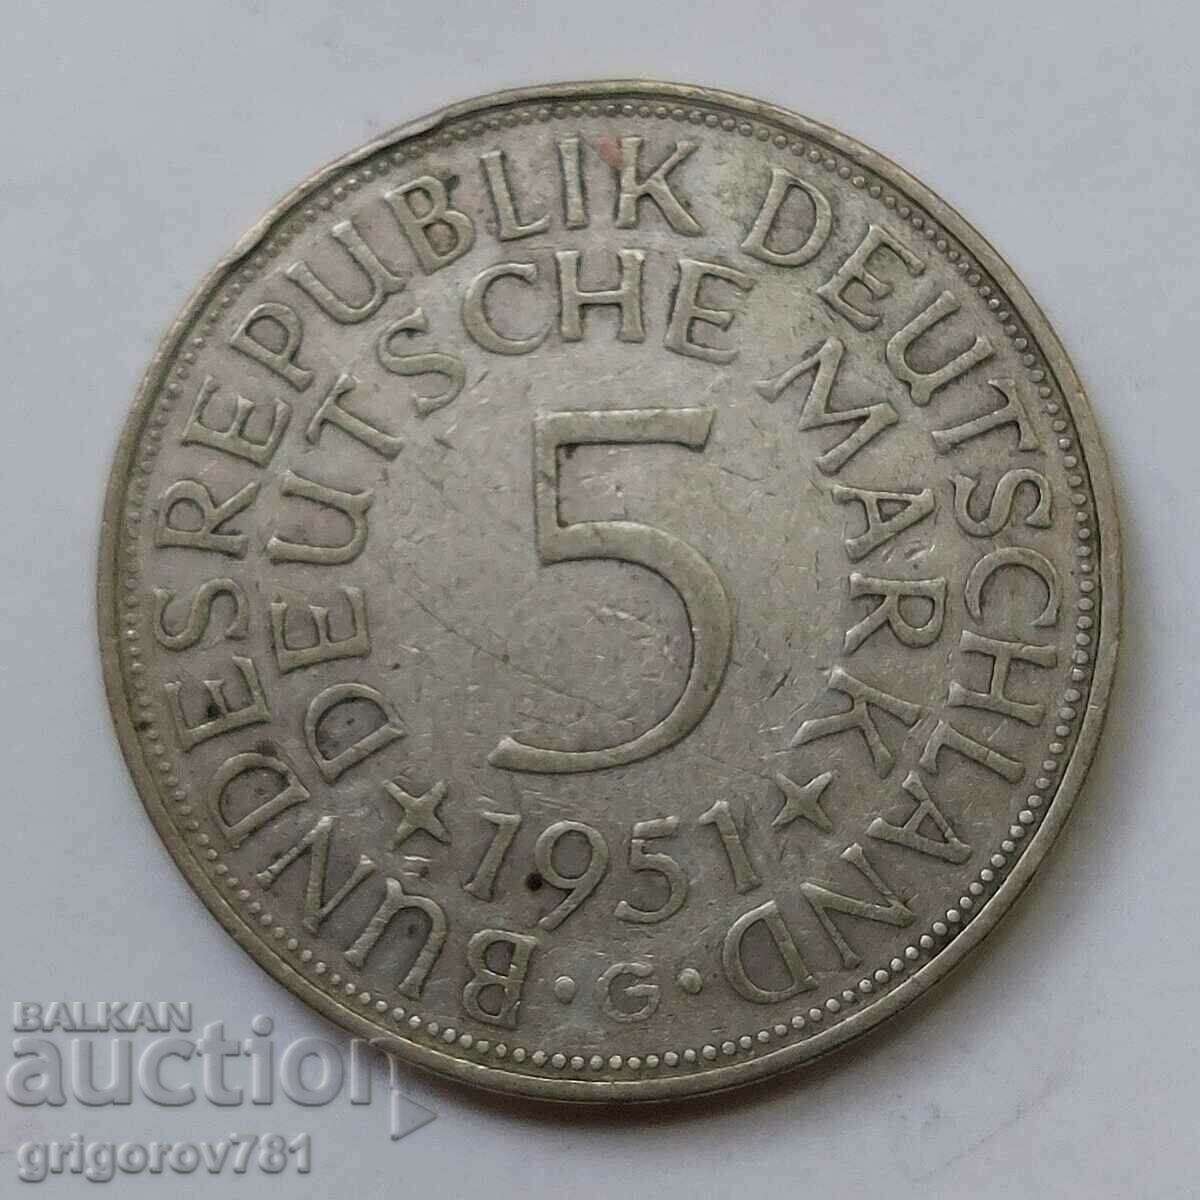 5 μάρκα ασήμι Γερμανία 1951 G - ασημένιο νόμισμα